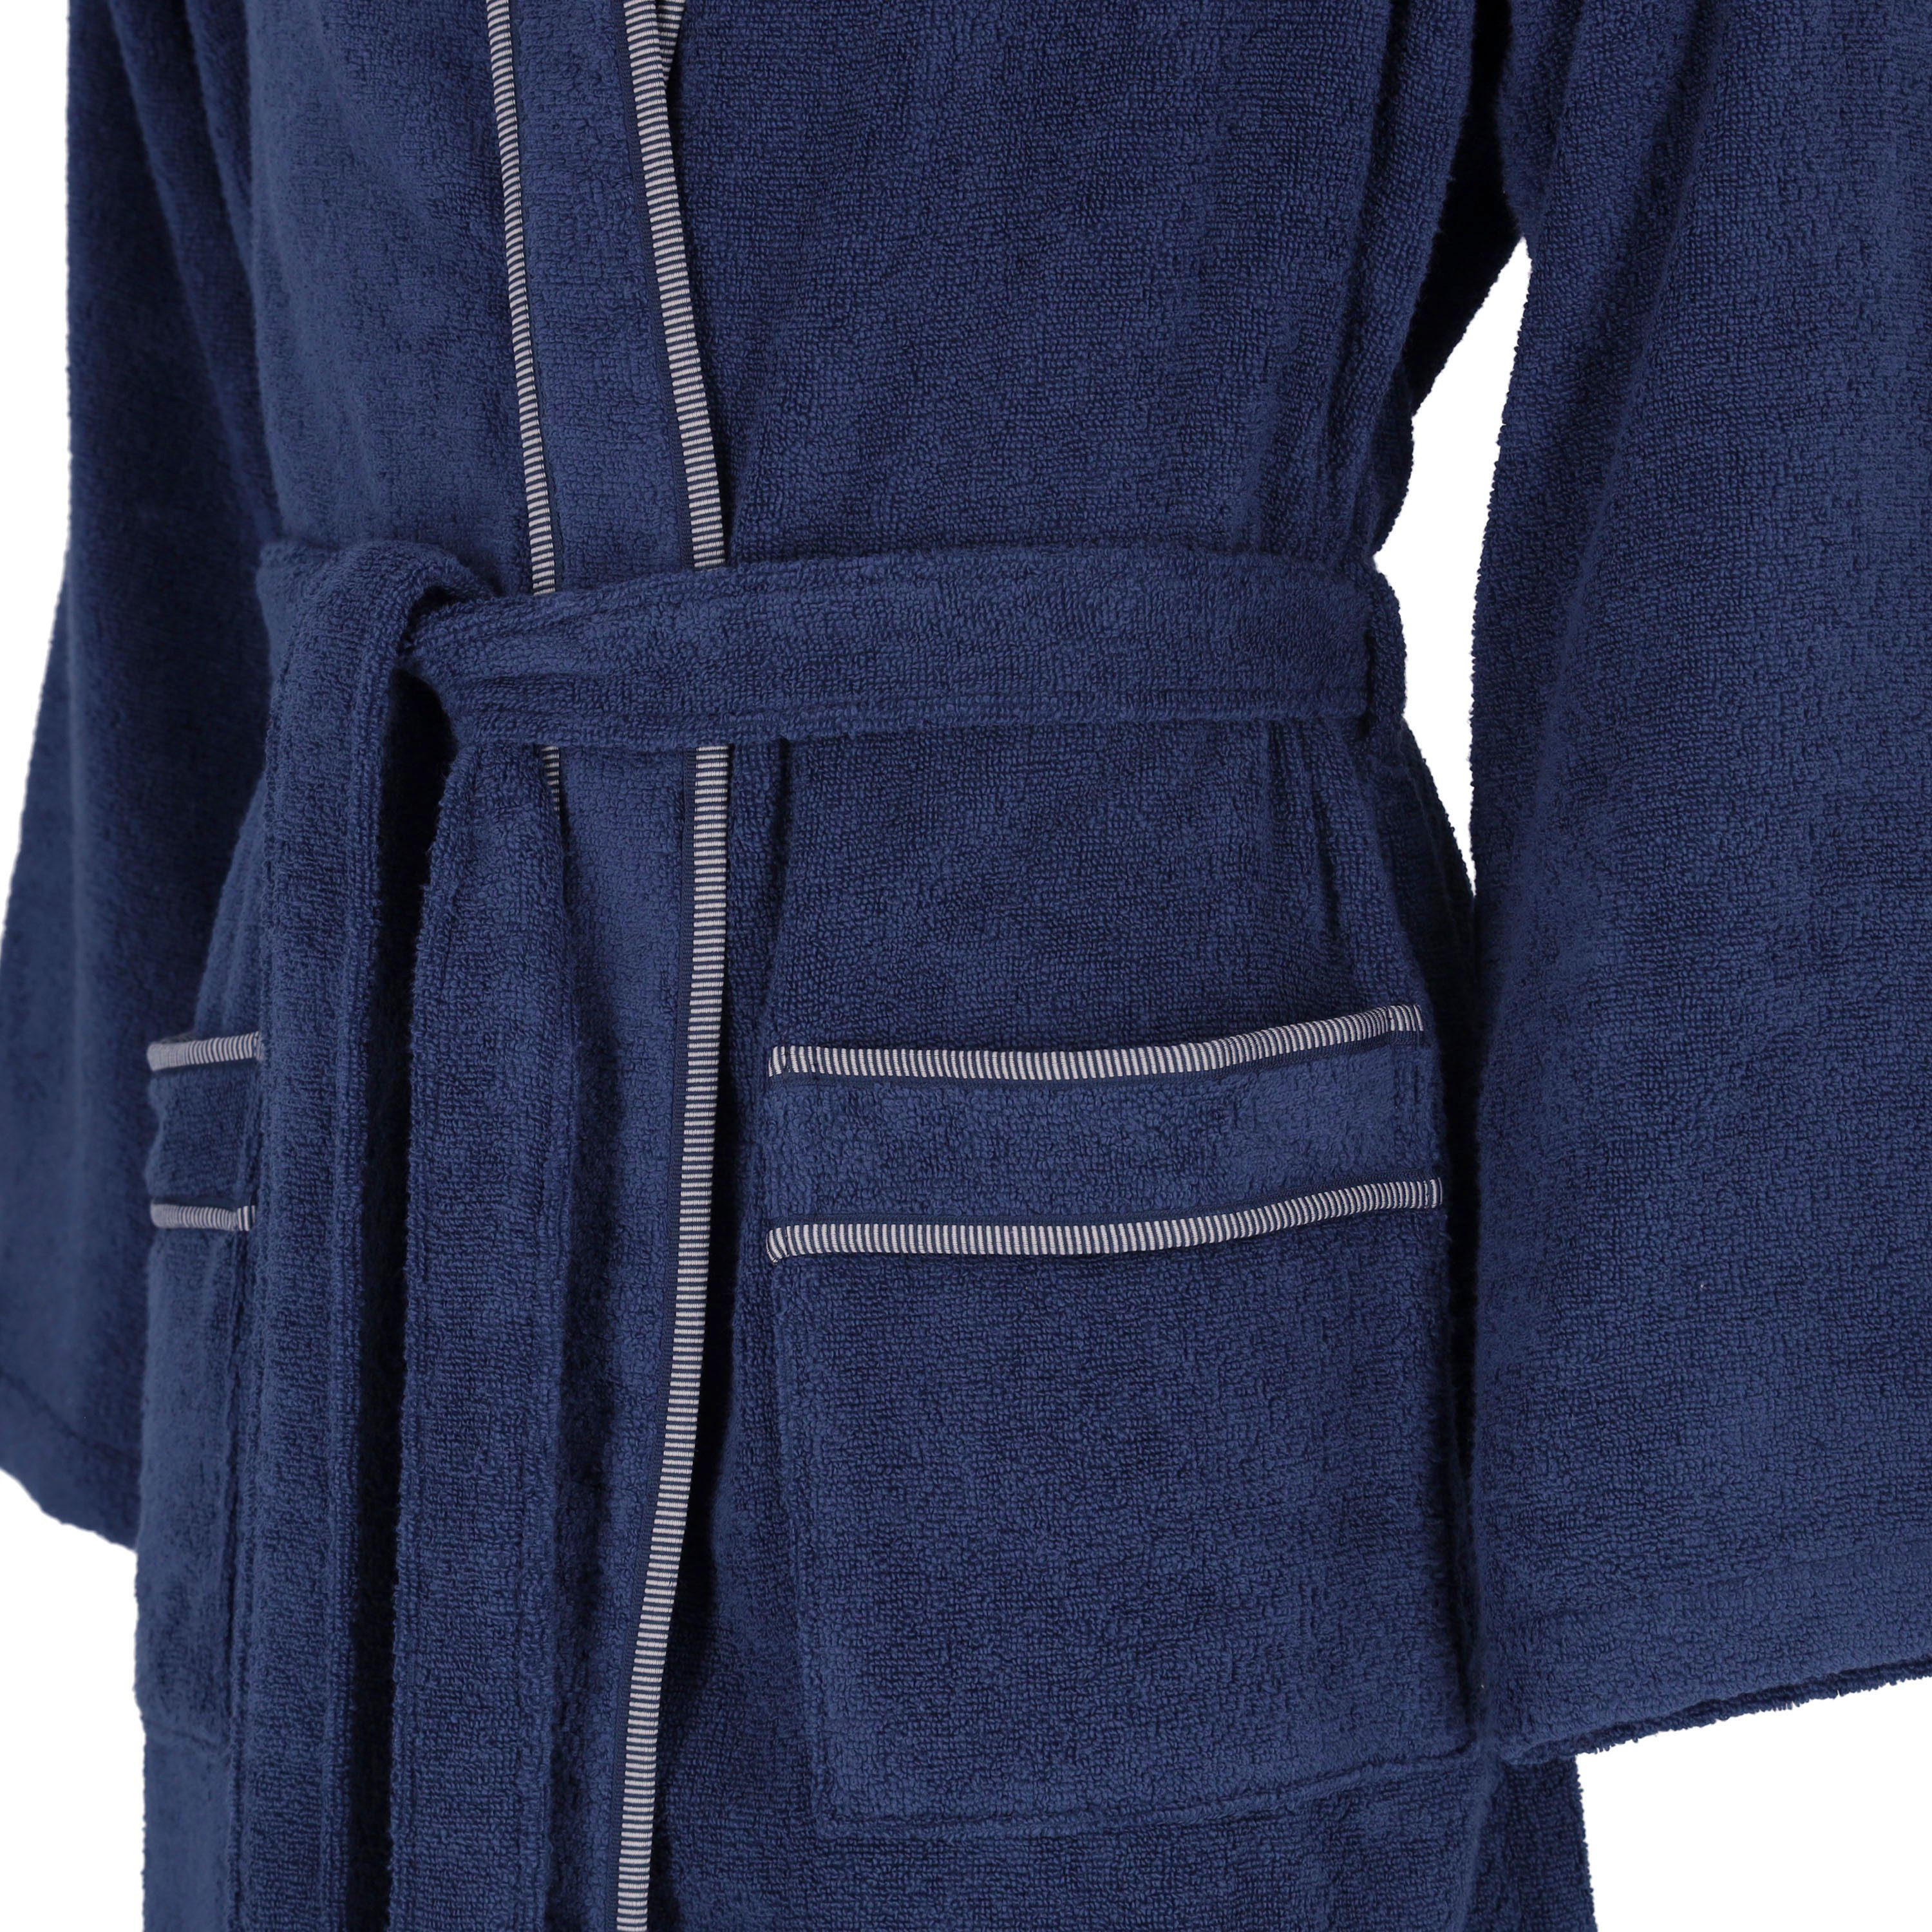 Jack, Langform, Vossen blau Kimono-Kragen, Baumwolle, Herrenbademantel marine Gürtel